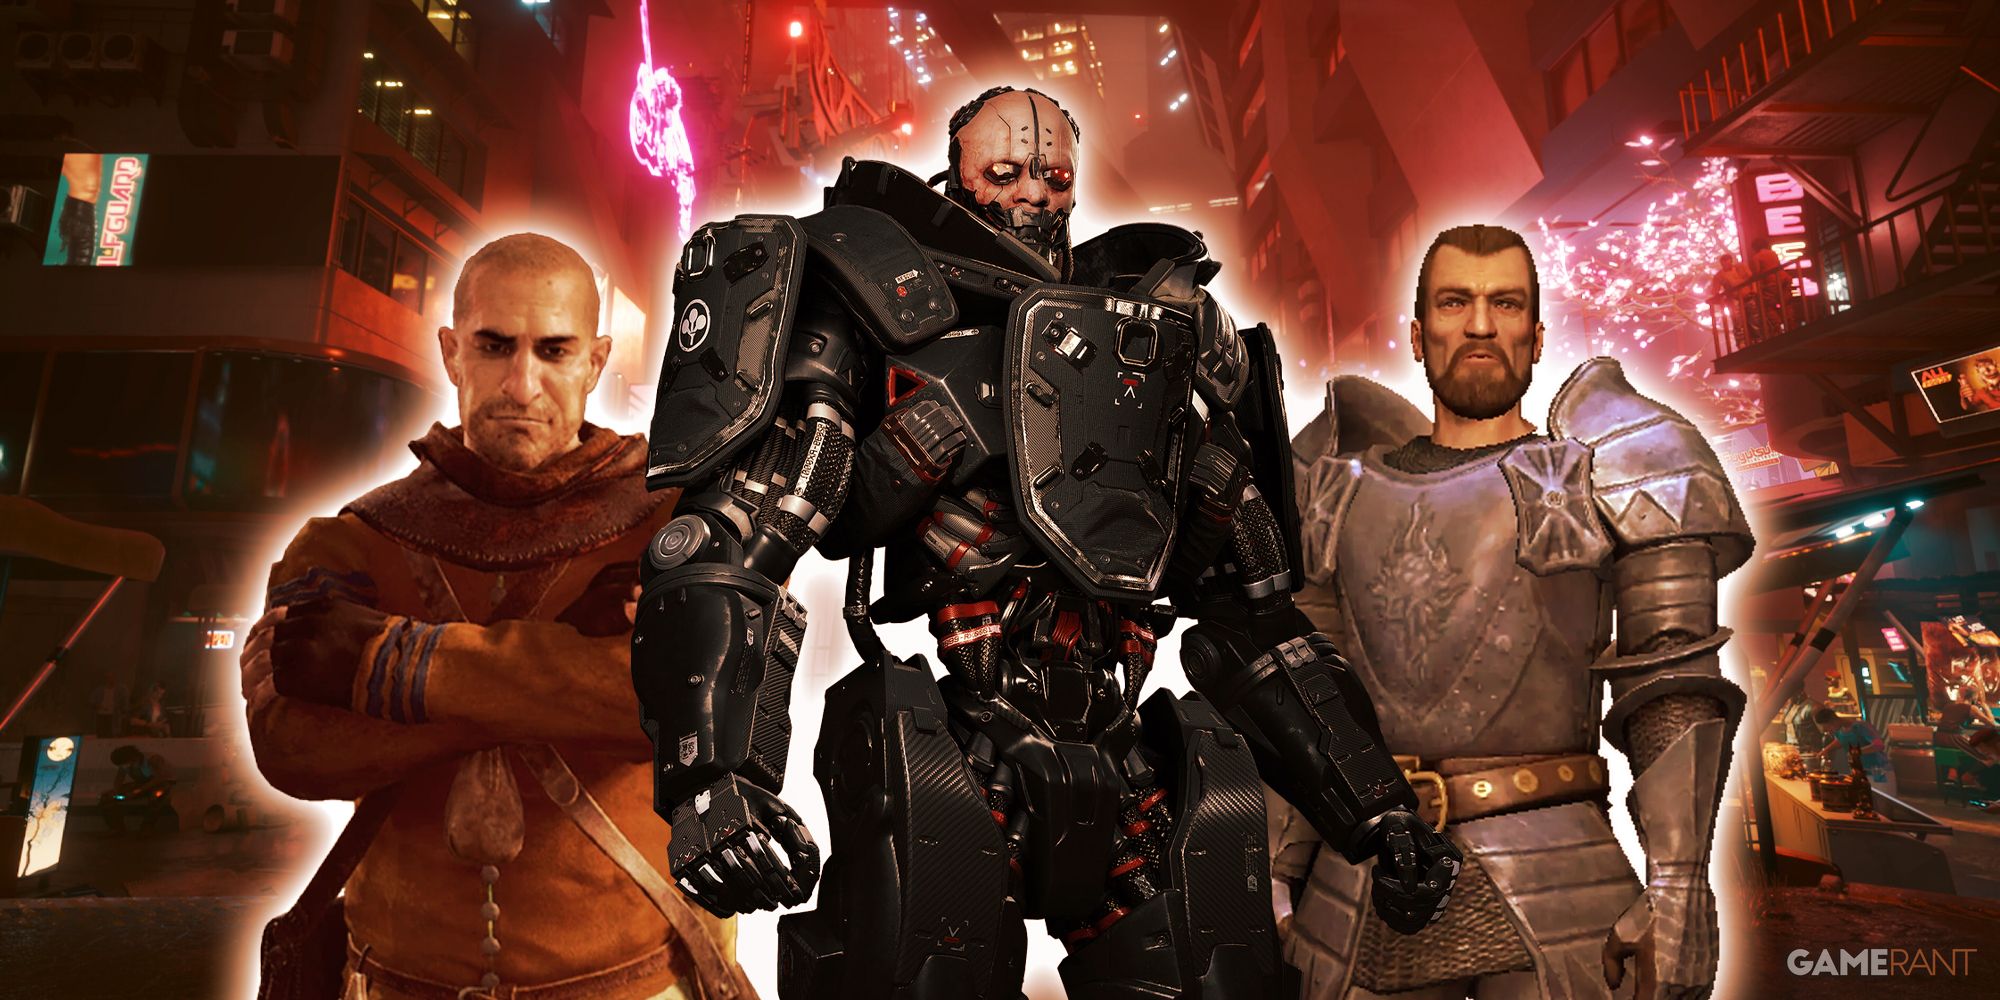 CD Projekt Red Games villains The Witcher 3: Wild Hunt Gaunter O'Dimm, Cyberpunk 2077 Adam Smasher, The Witcher Jacques De Aldersberg